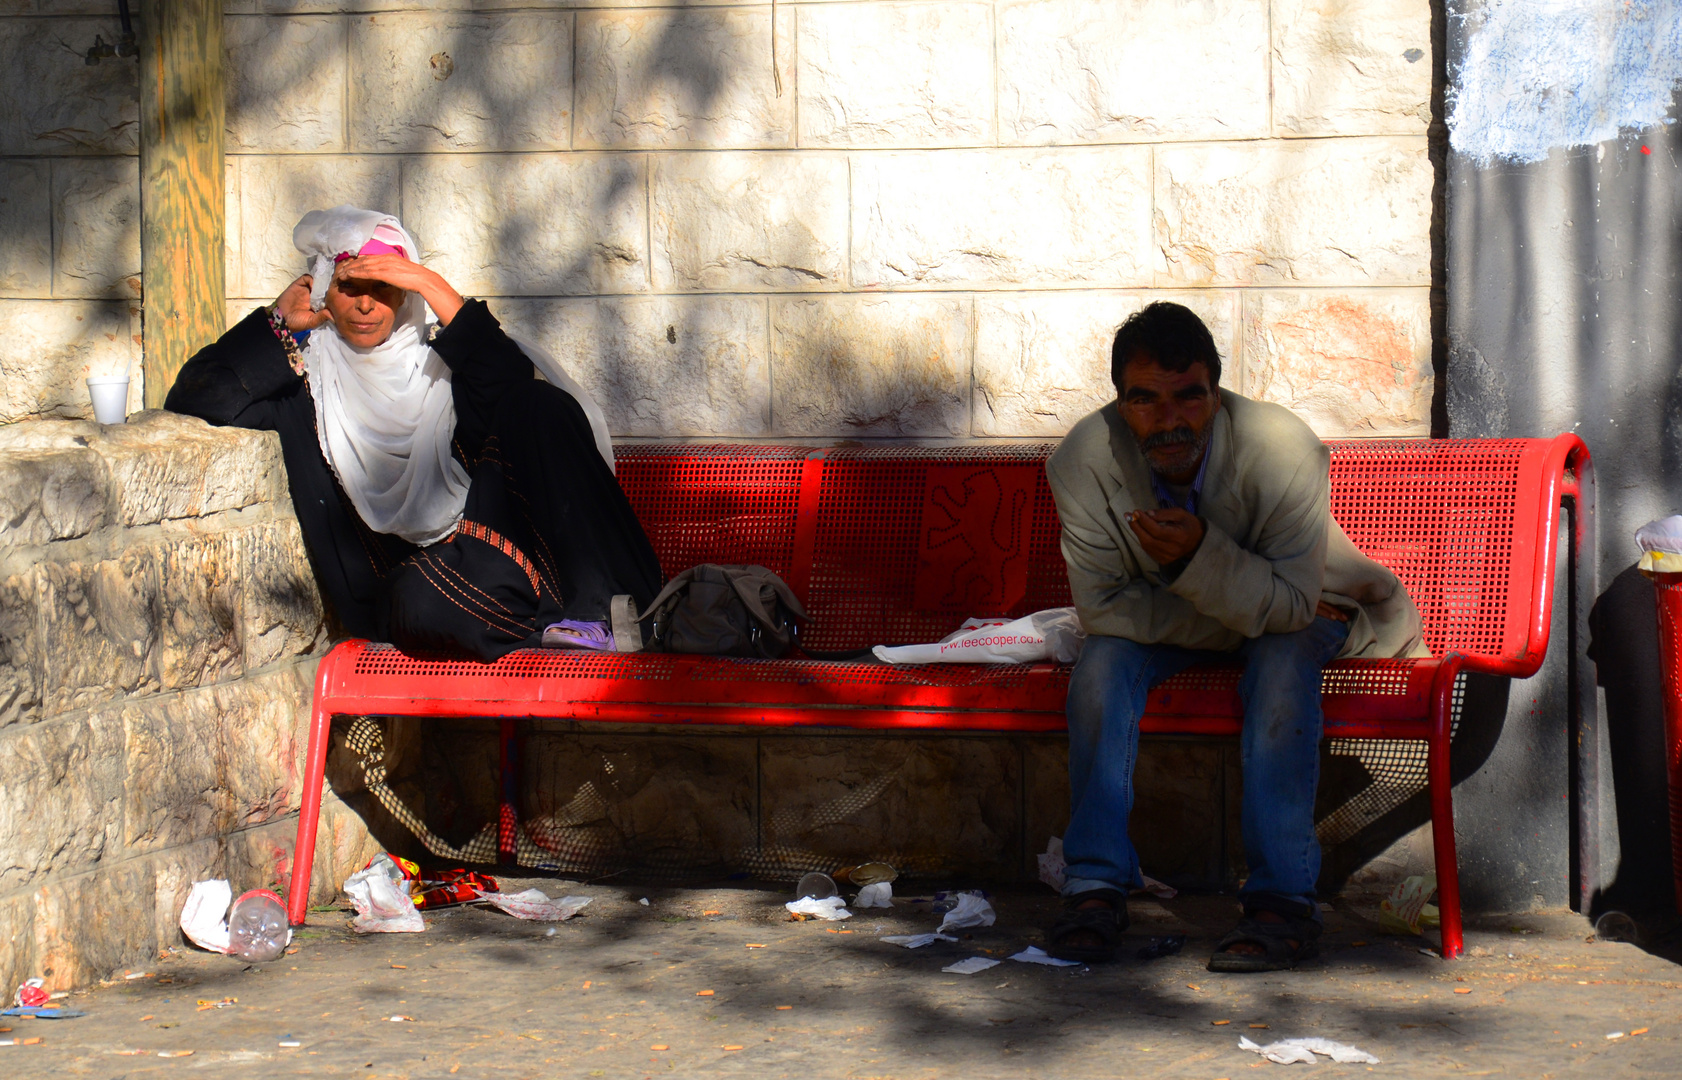 Palestinenserin am Sabbatmorgen in Jerusalem auf einer Parkbank relaxend